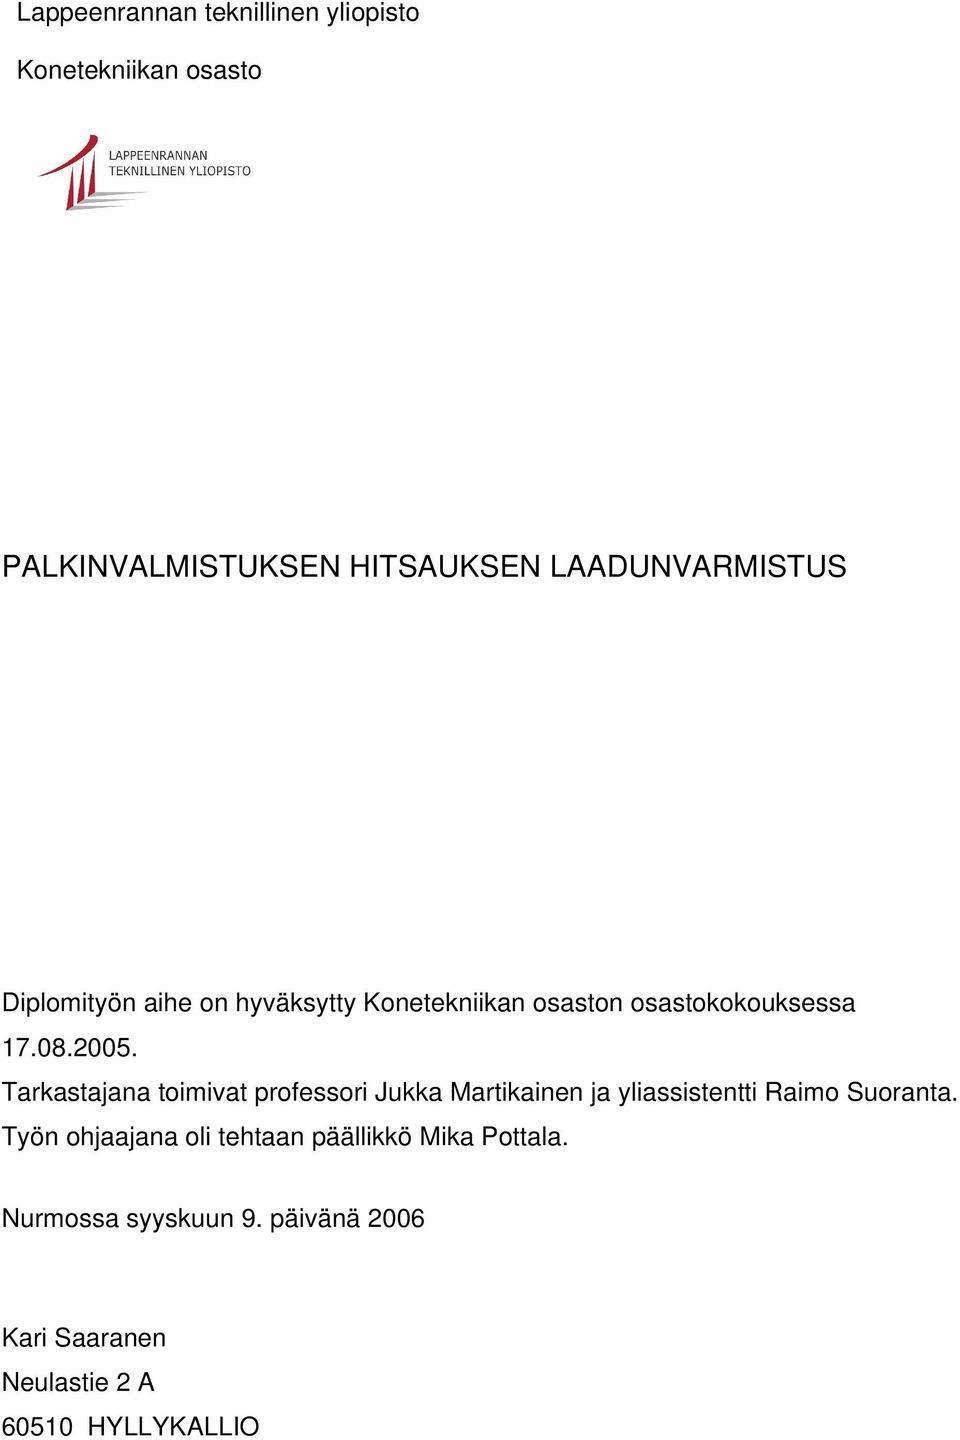 Tarkastajana toimivat professori Jukka Martikainen ja yliassistentti Raimo Suoranta.